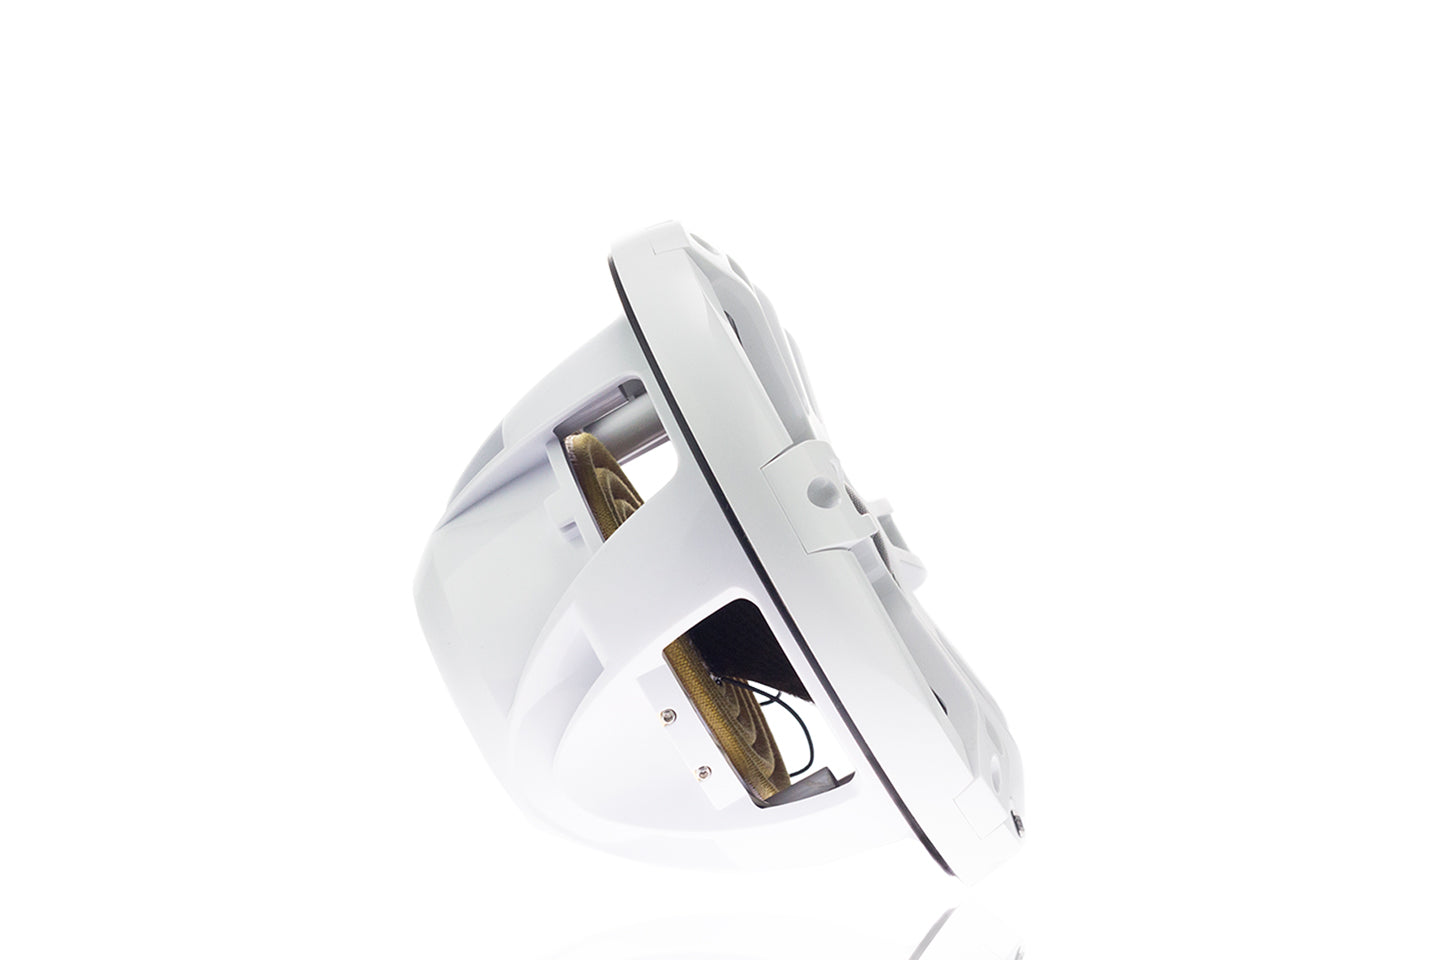 Garmin koaksial hvid sportsmarinehøjttaler med CRGBW LED-belysning